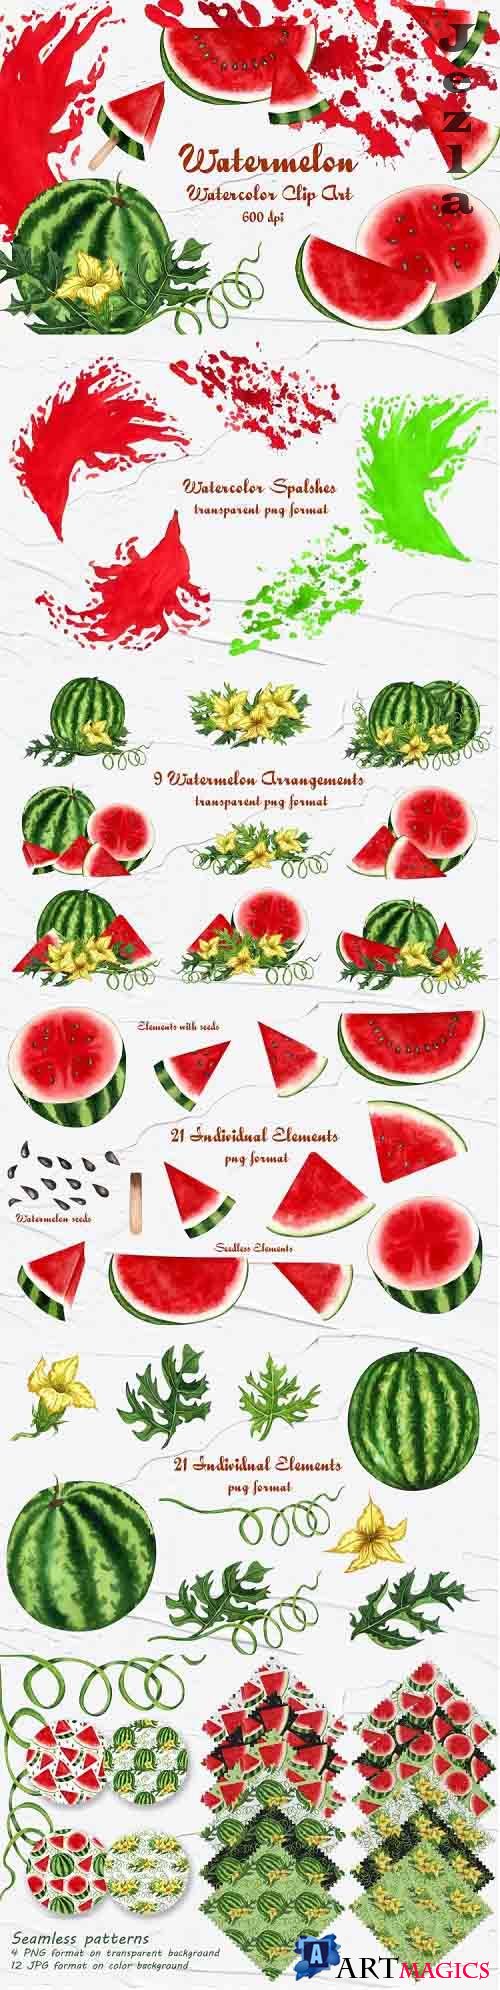 Watermelon Watercolor Clip Art 600dpi  - 701910